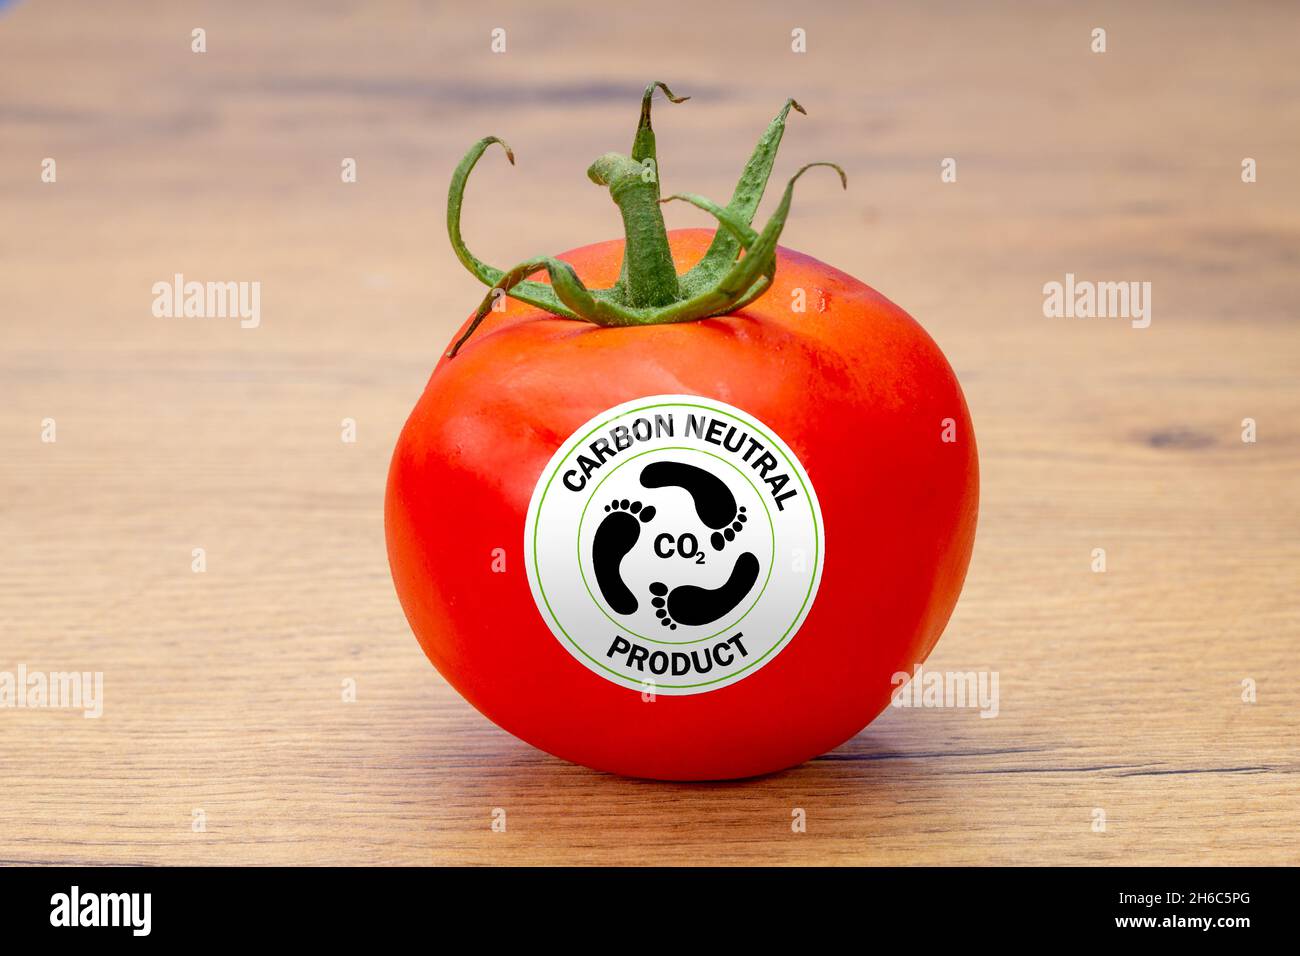 tomate avec étiquette de produit neutre en carbone, étiquettes de consommation sur les aliments pour aider à une consommation durable et éthique Banque D'Images